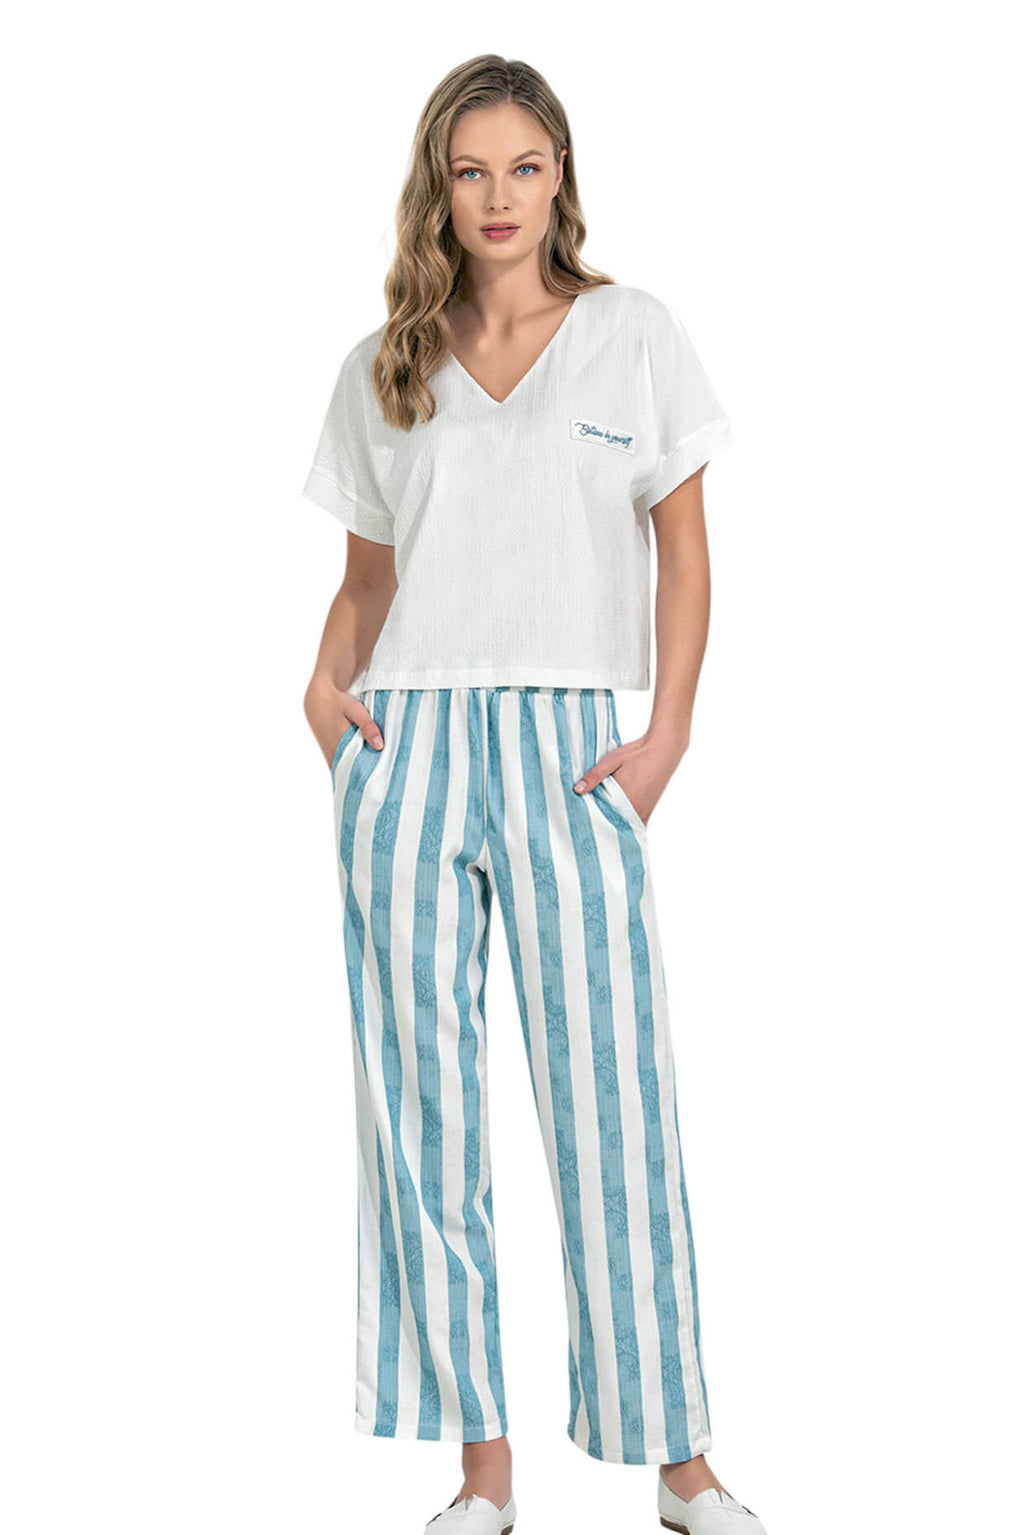 Stripped pajamas set 